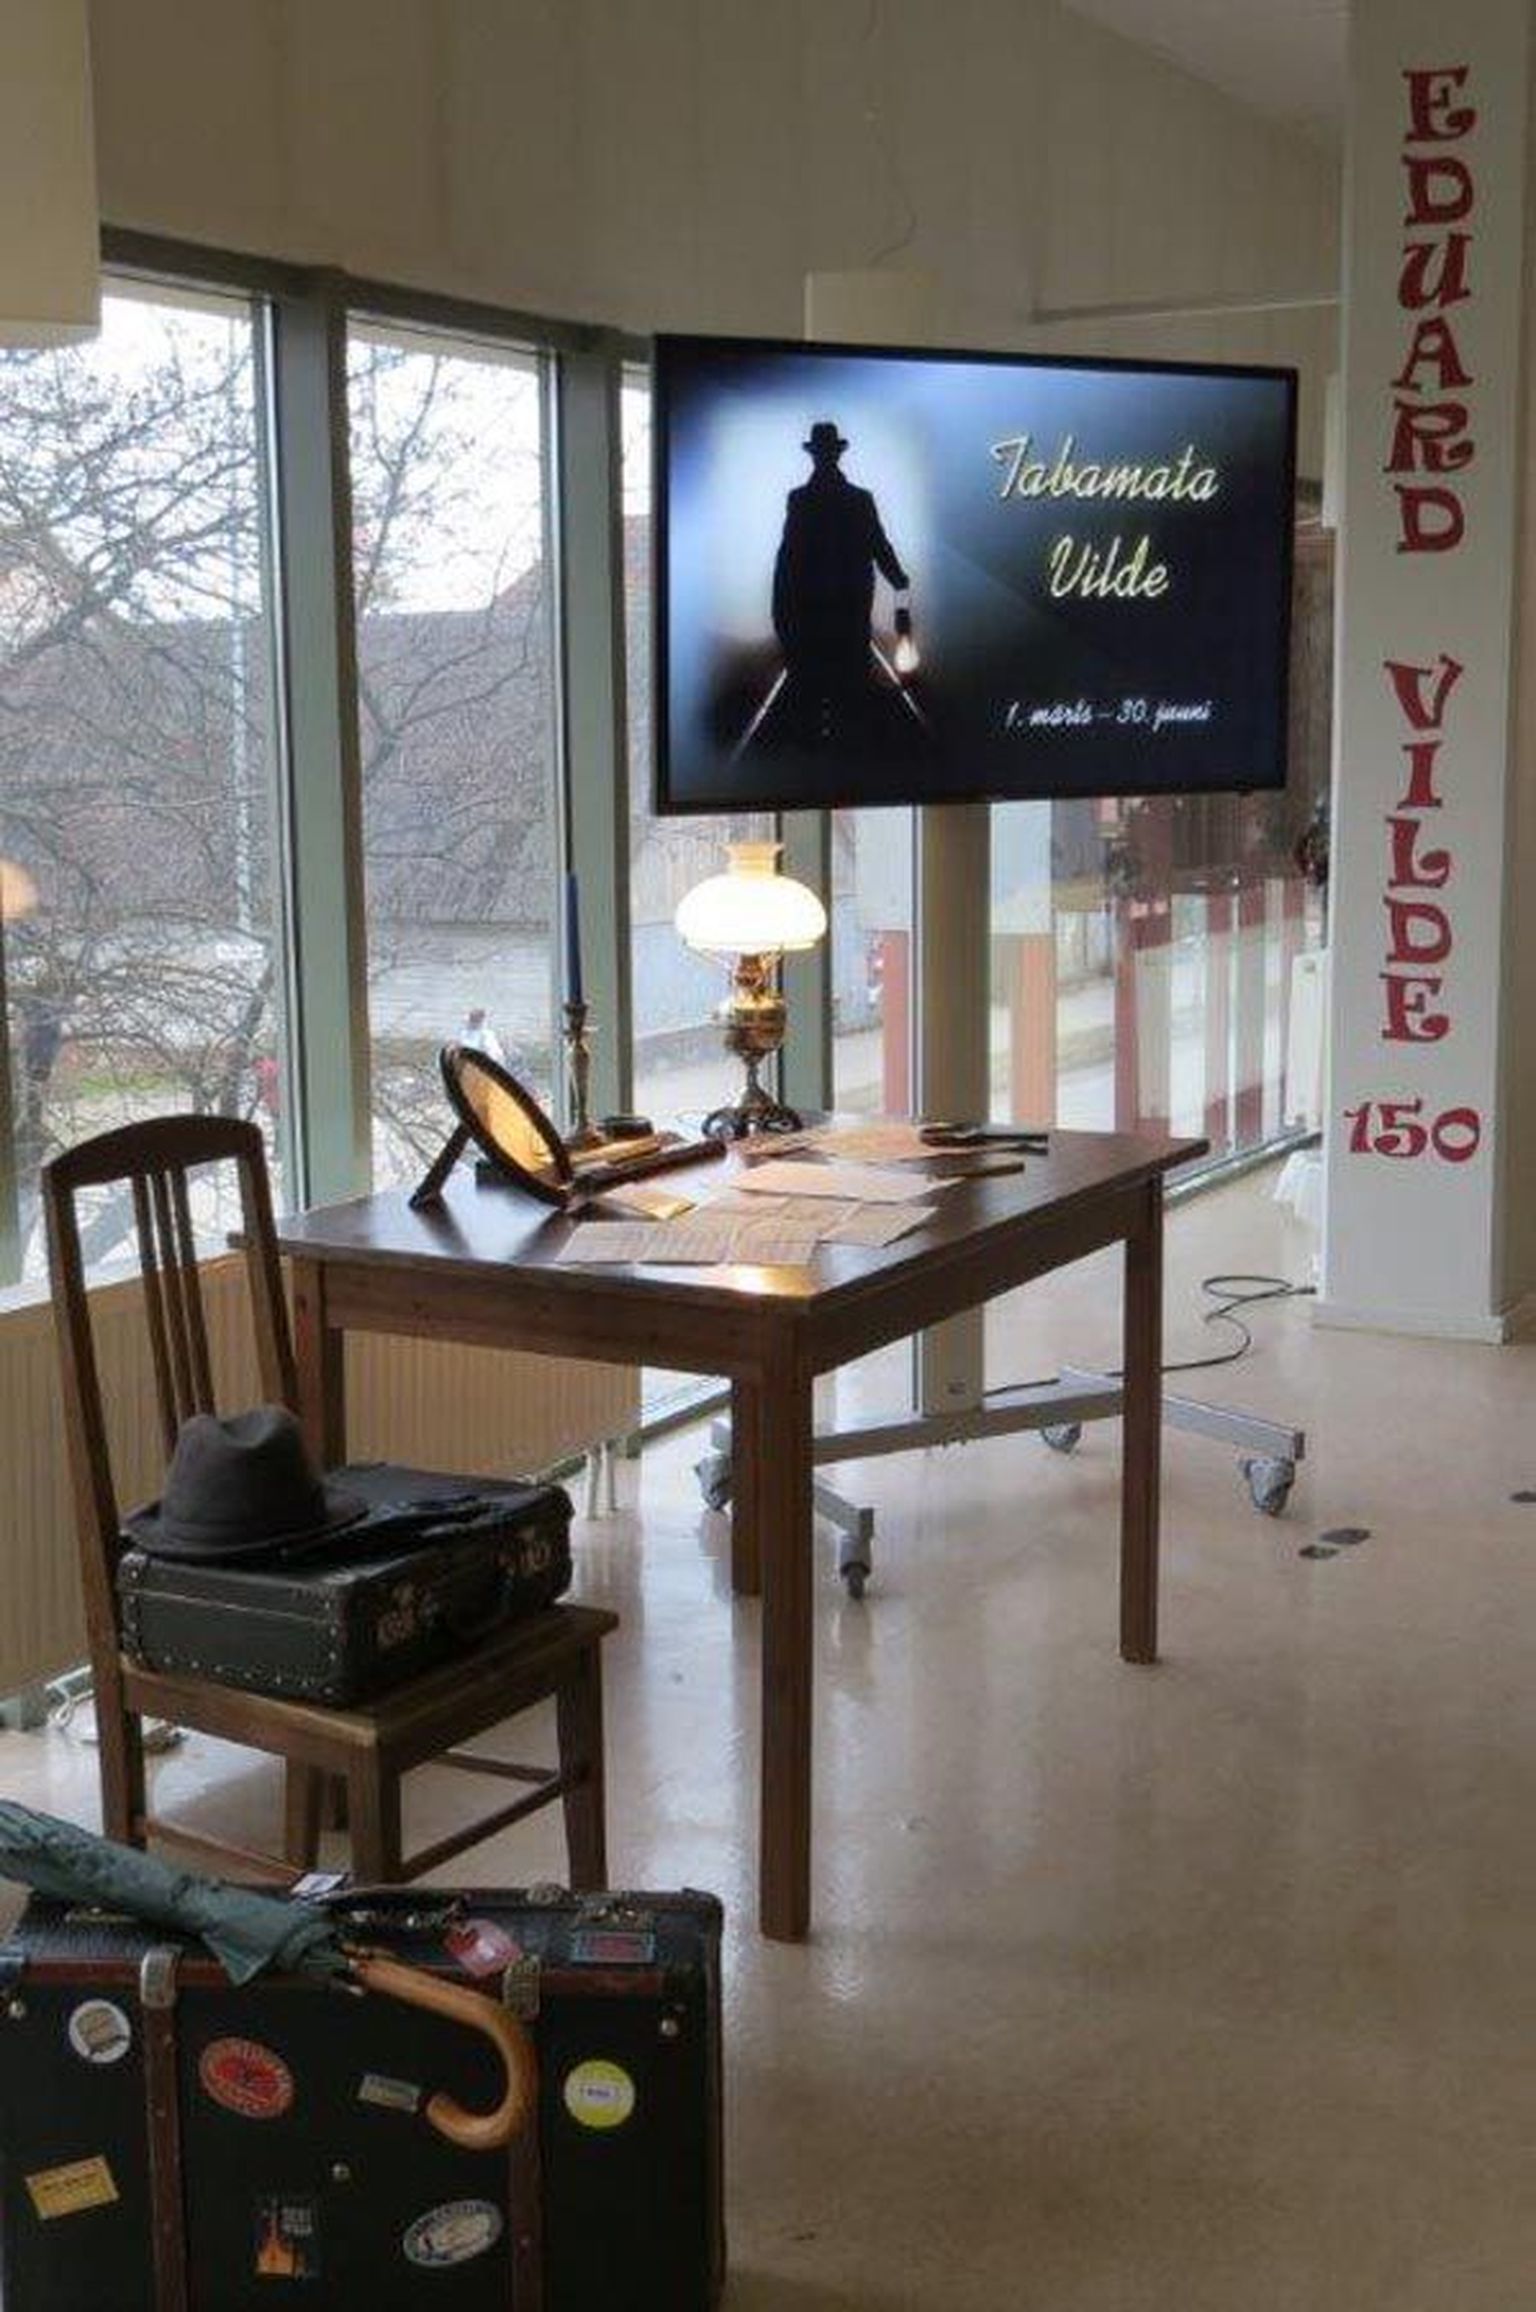 Viljandi linnaraamatukogu näitus «Püüa Vildet tabada» sai mullu kirjaniku 150. aastapäeva puhul korraldatud üleriigilisel konkursil «Tabamata Vilde» teise koha.